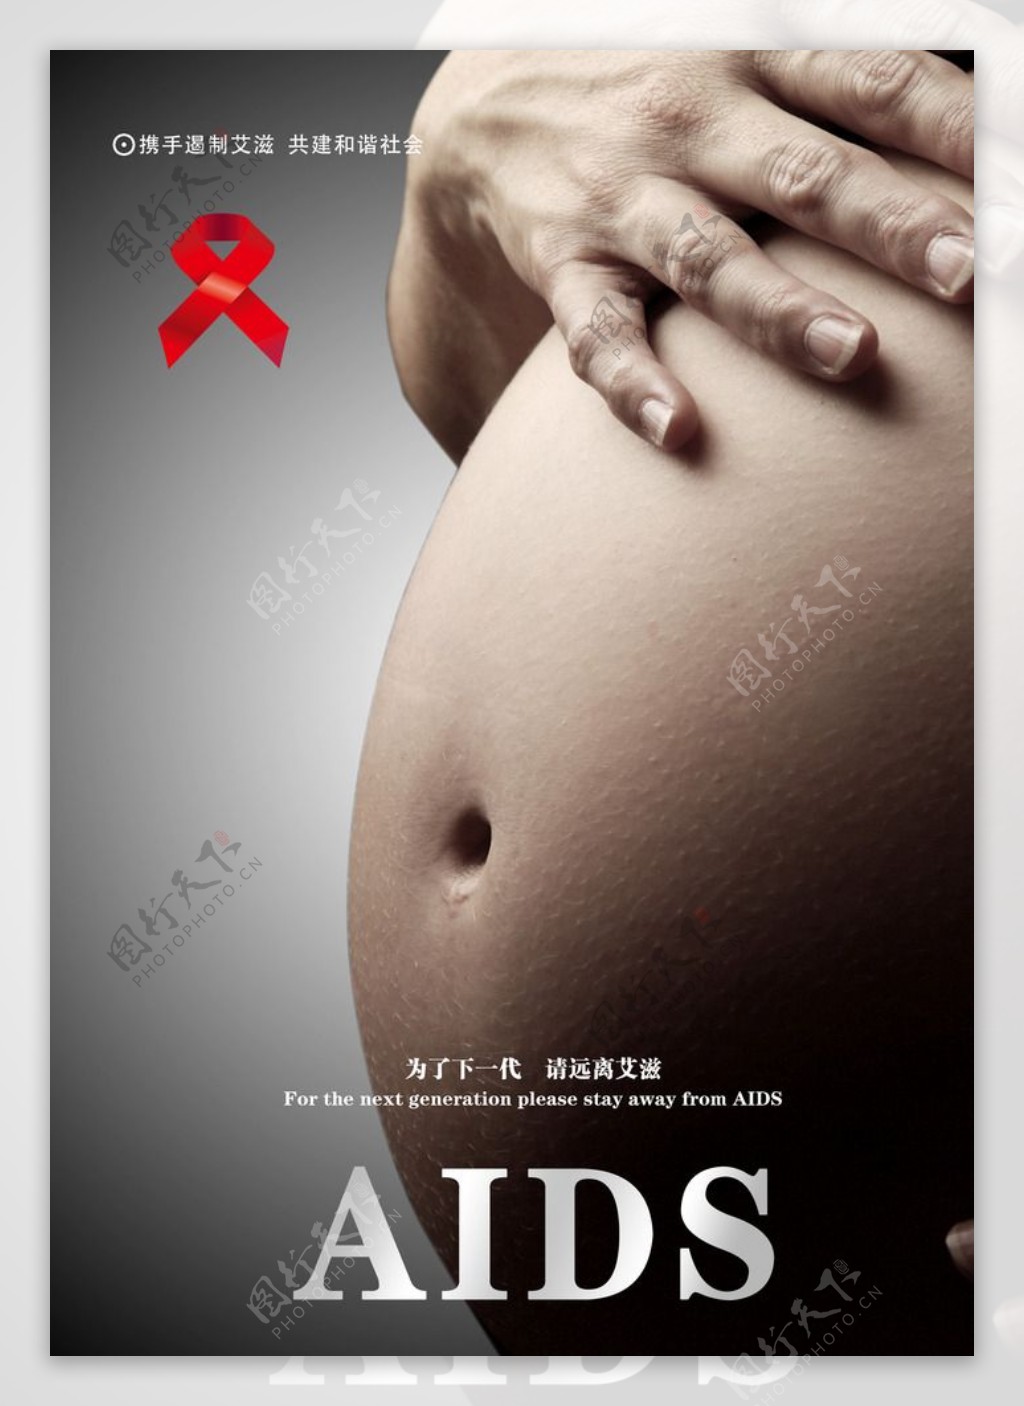 艾滋病传播途径公益广告